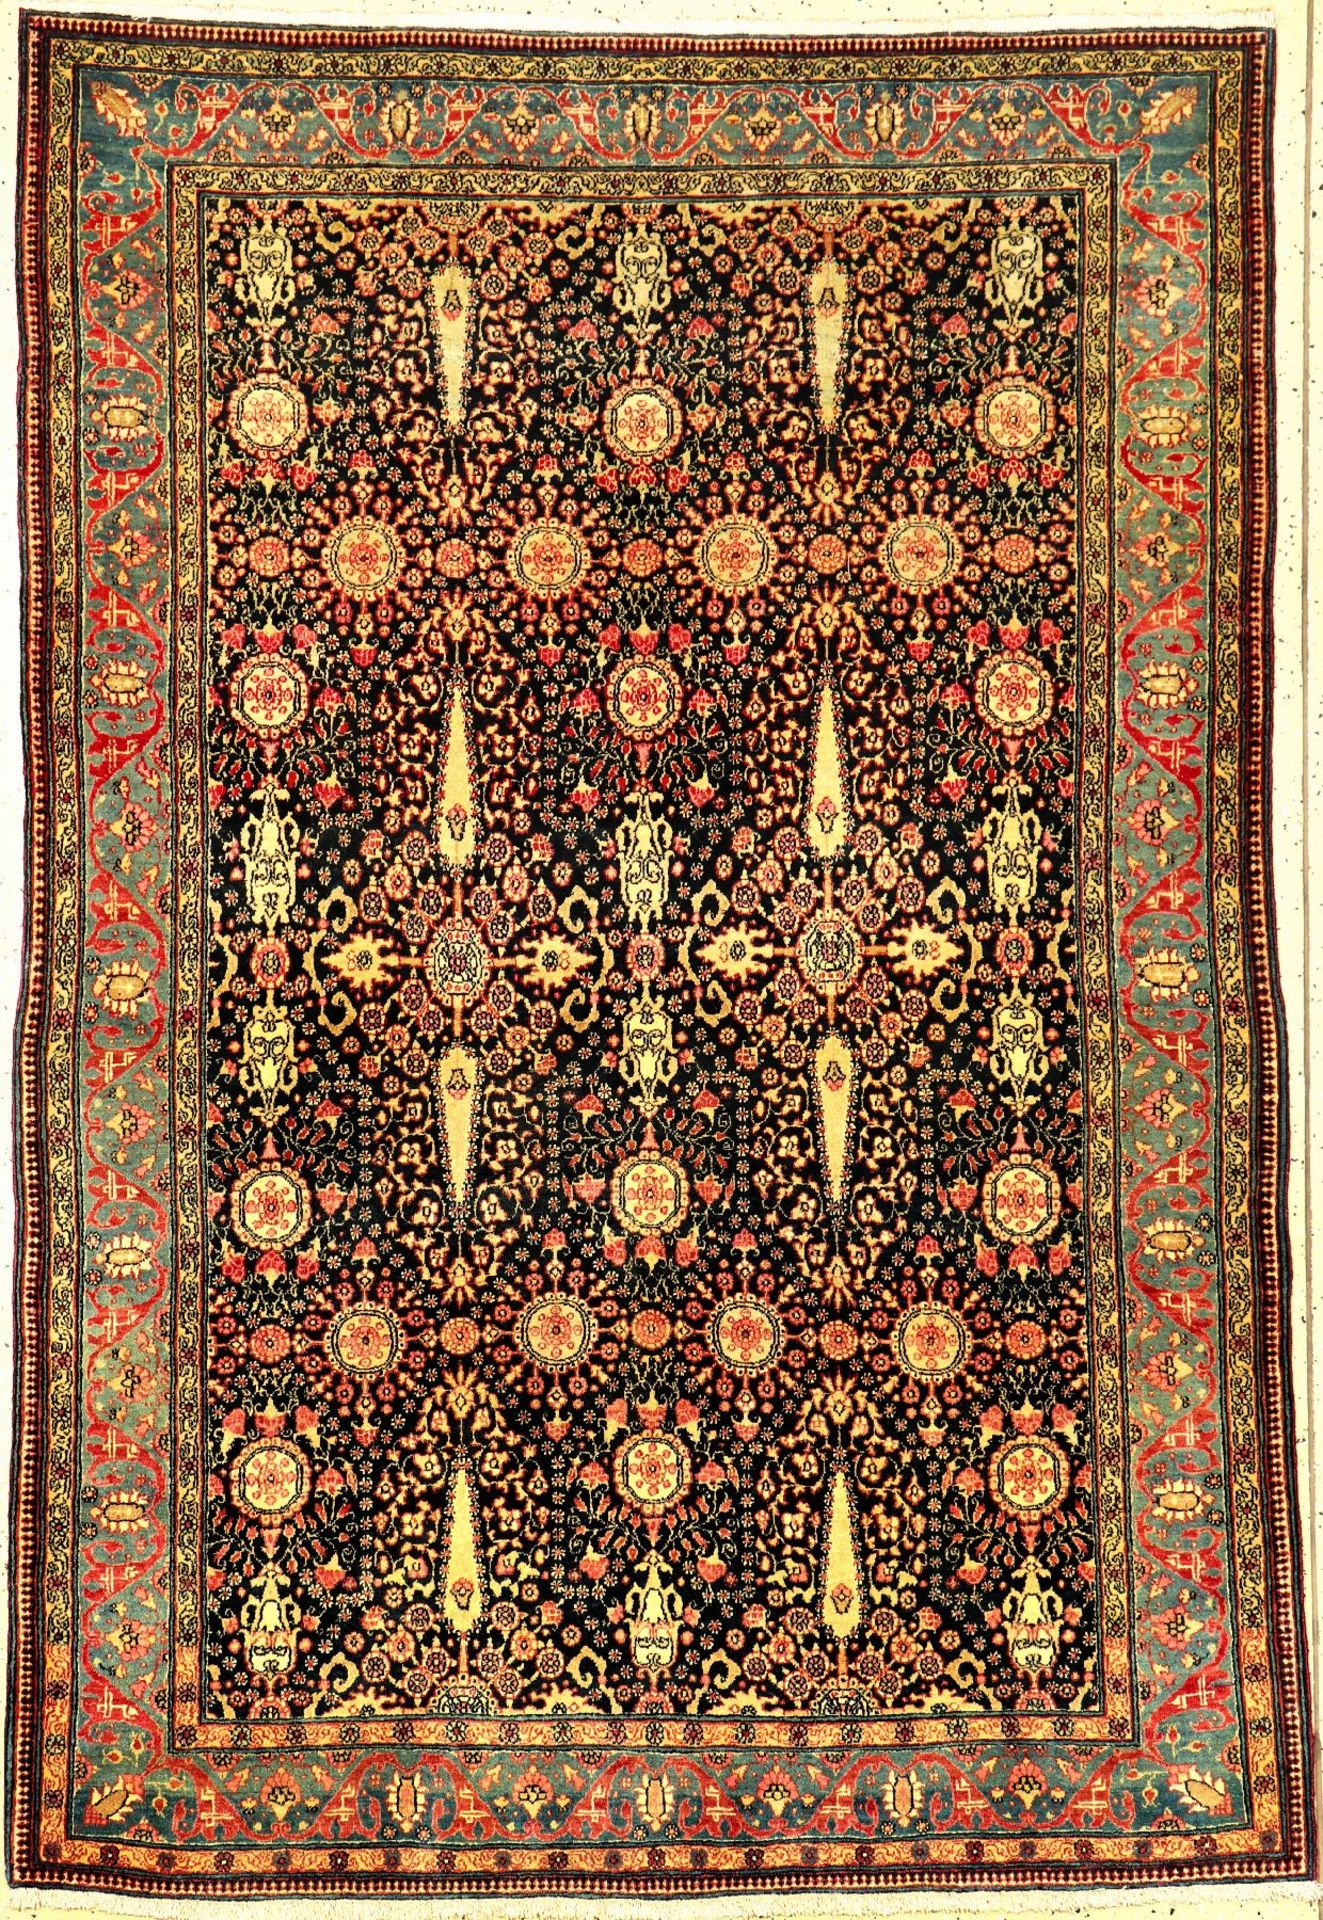 Feiner Teheran antik (Zypressen), Zentralpersien, um 1900, Korkwolle geknüpft auf Baumwolle. Fein